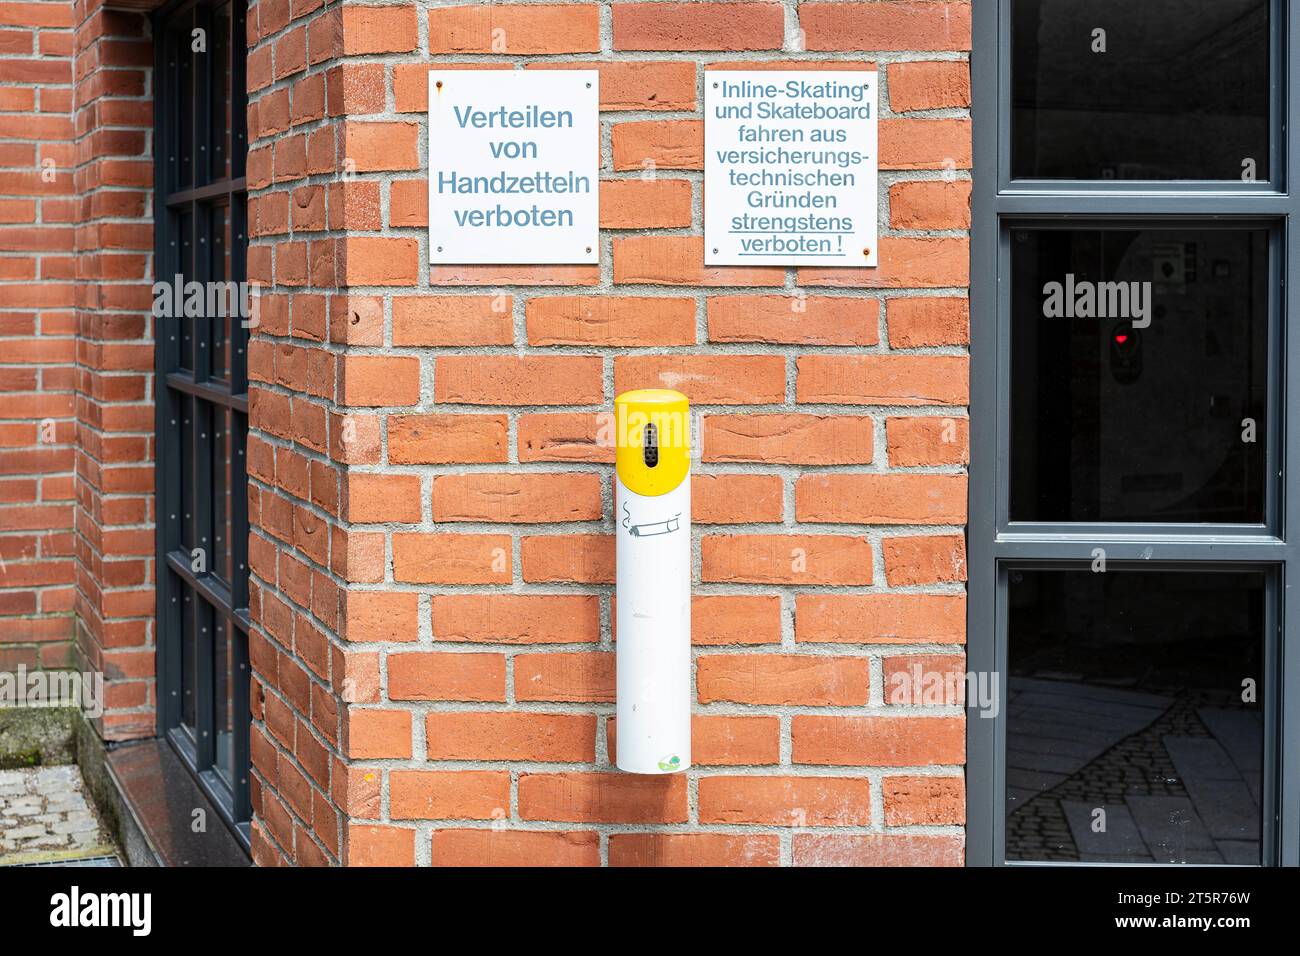 Verteilen von Handzetteln verboten, Warntafel an einer Ziegelmauer an einer Architektur in der Altstadt von Memmingen, Bayern, Deutschland. Foto Stock